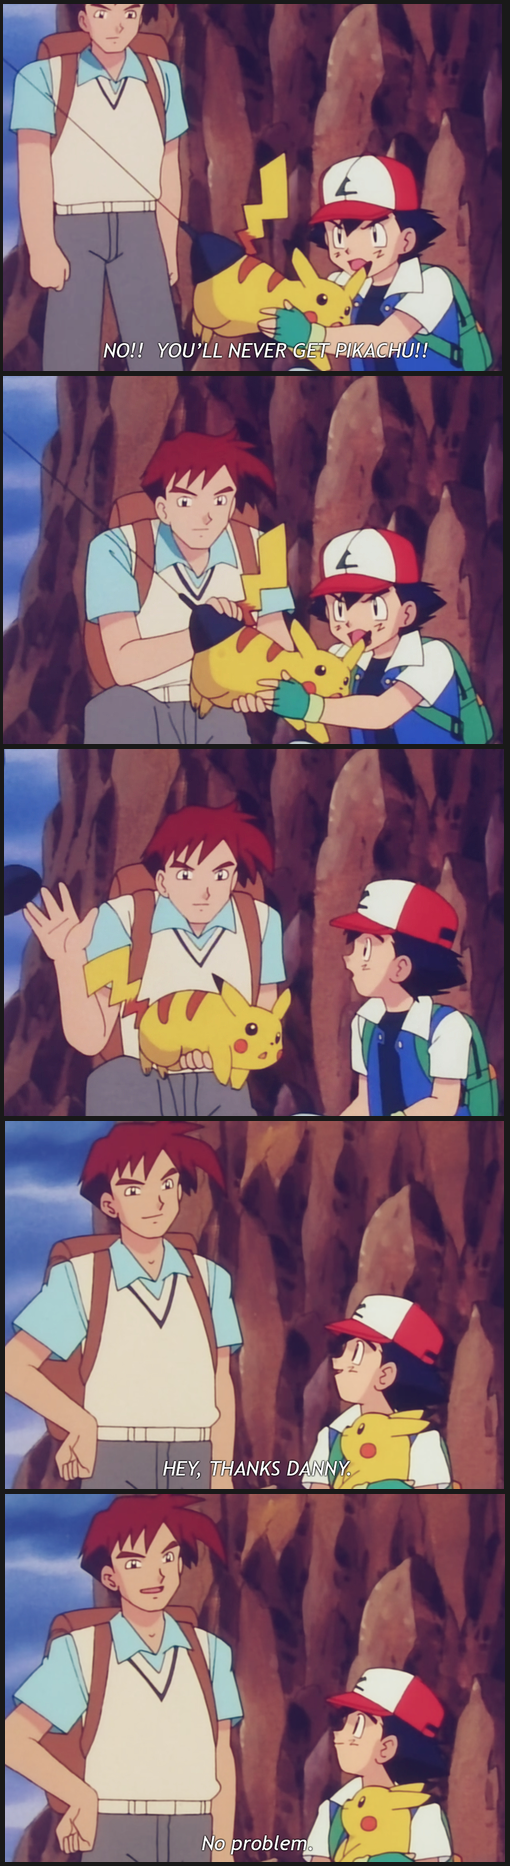 Ash, you stupid ***